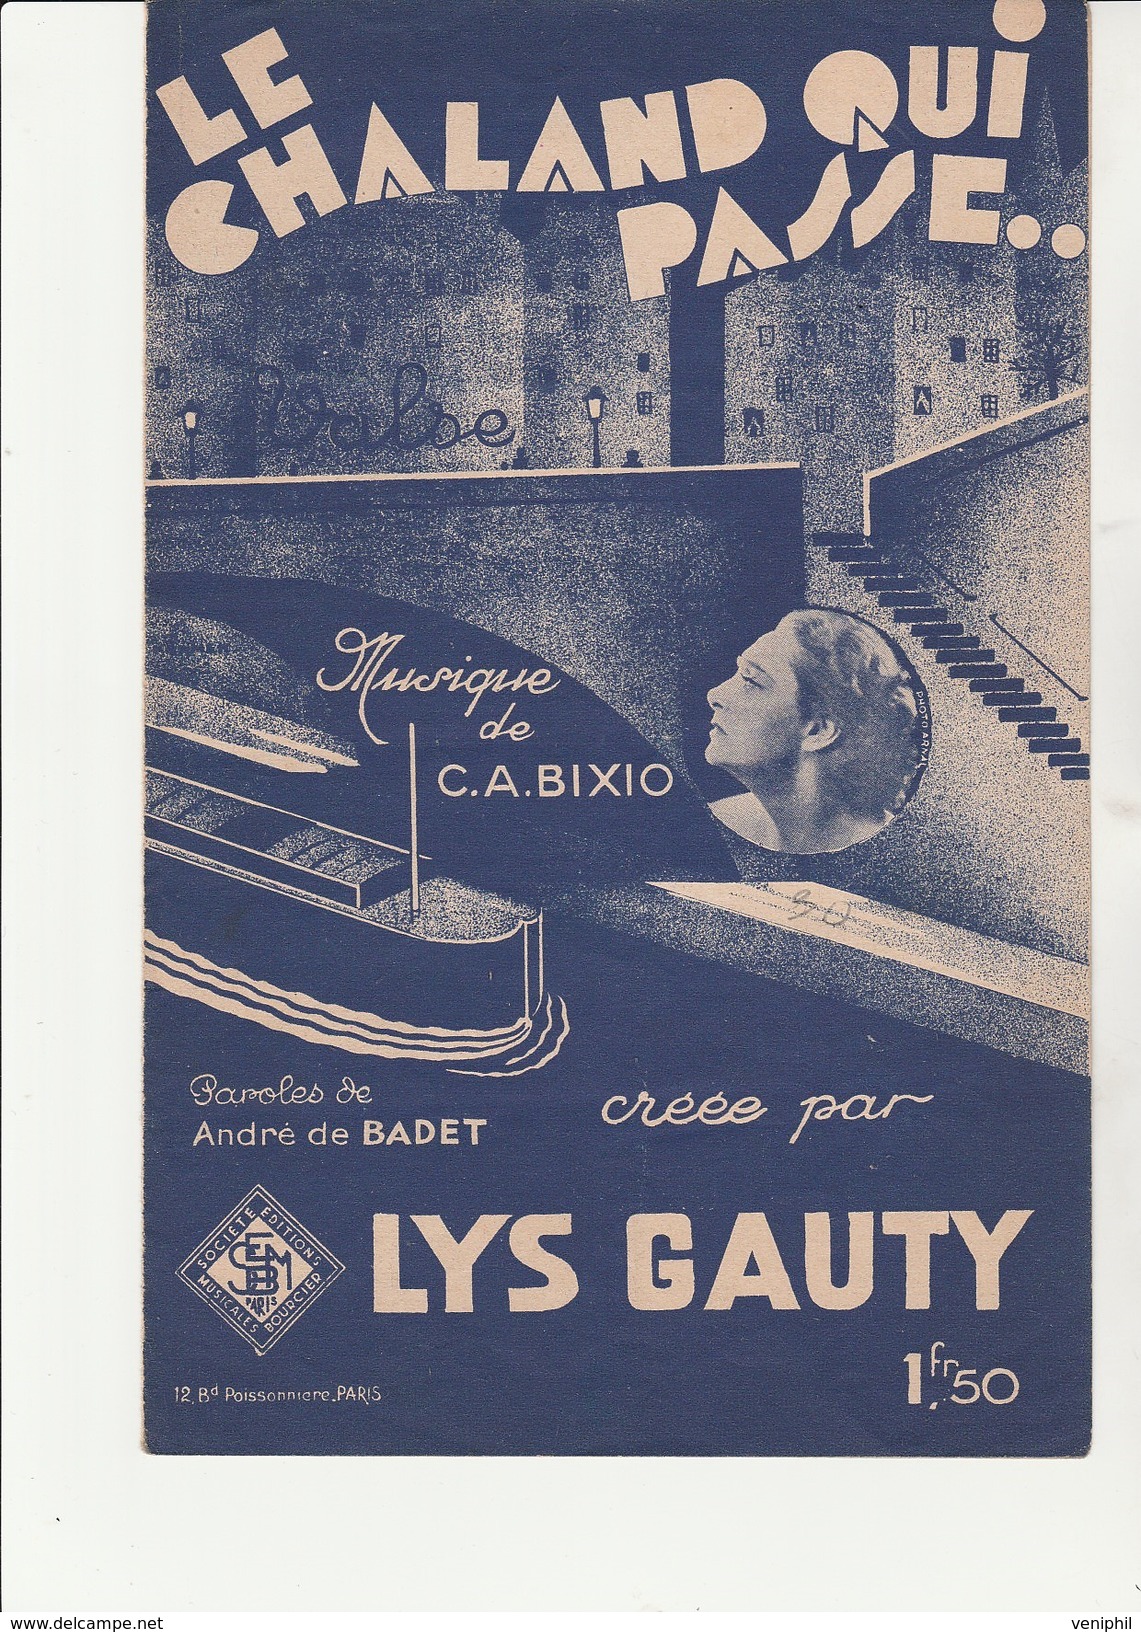 PARTITION " LE CHALAND QUI PASSE " MUSIQUE DE C.A BIXIO - CREE PAR LYS GAUTY- 1932 - Partitions Musicales Anciennes